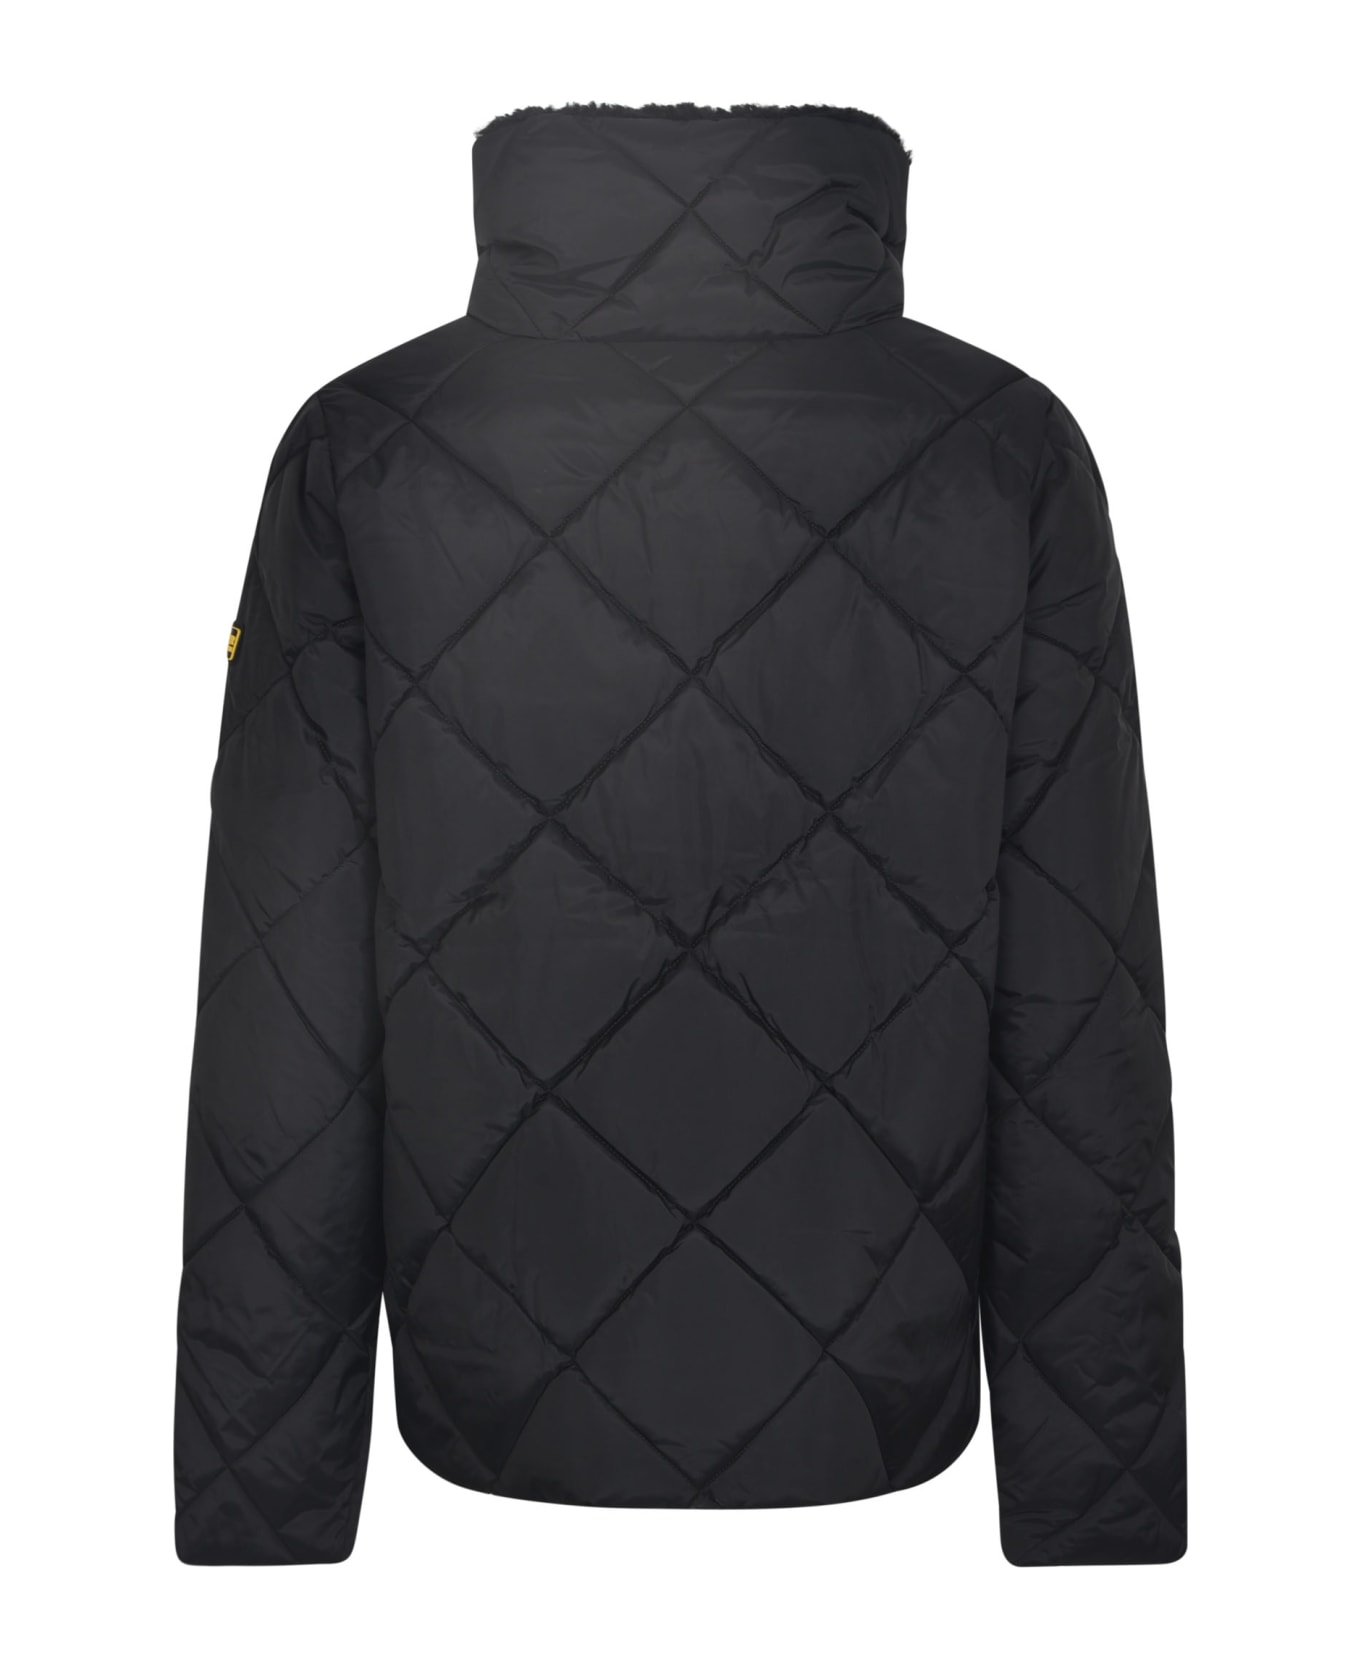 Barbour Quilted Zip Classic Jacket - Black ジャケット